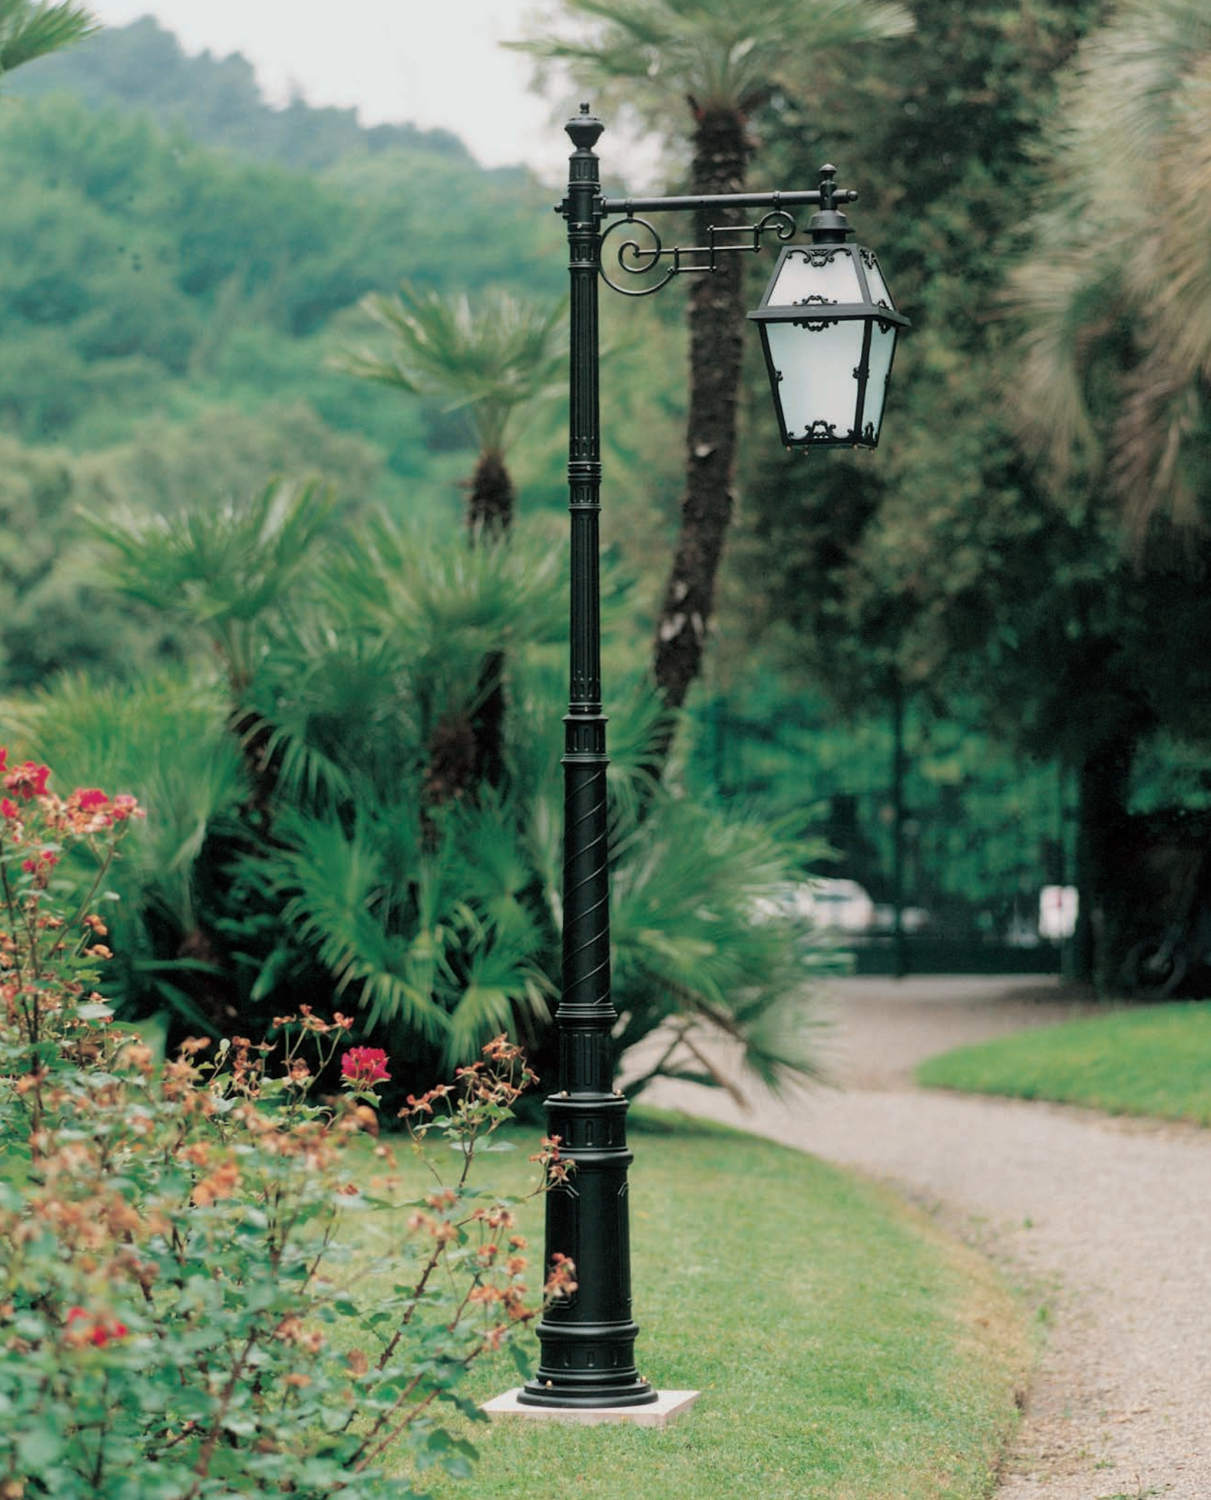 Tuscan Lamp Post with hanging lantern